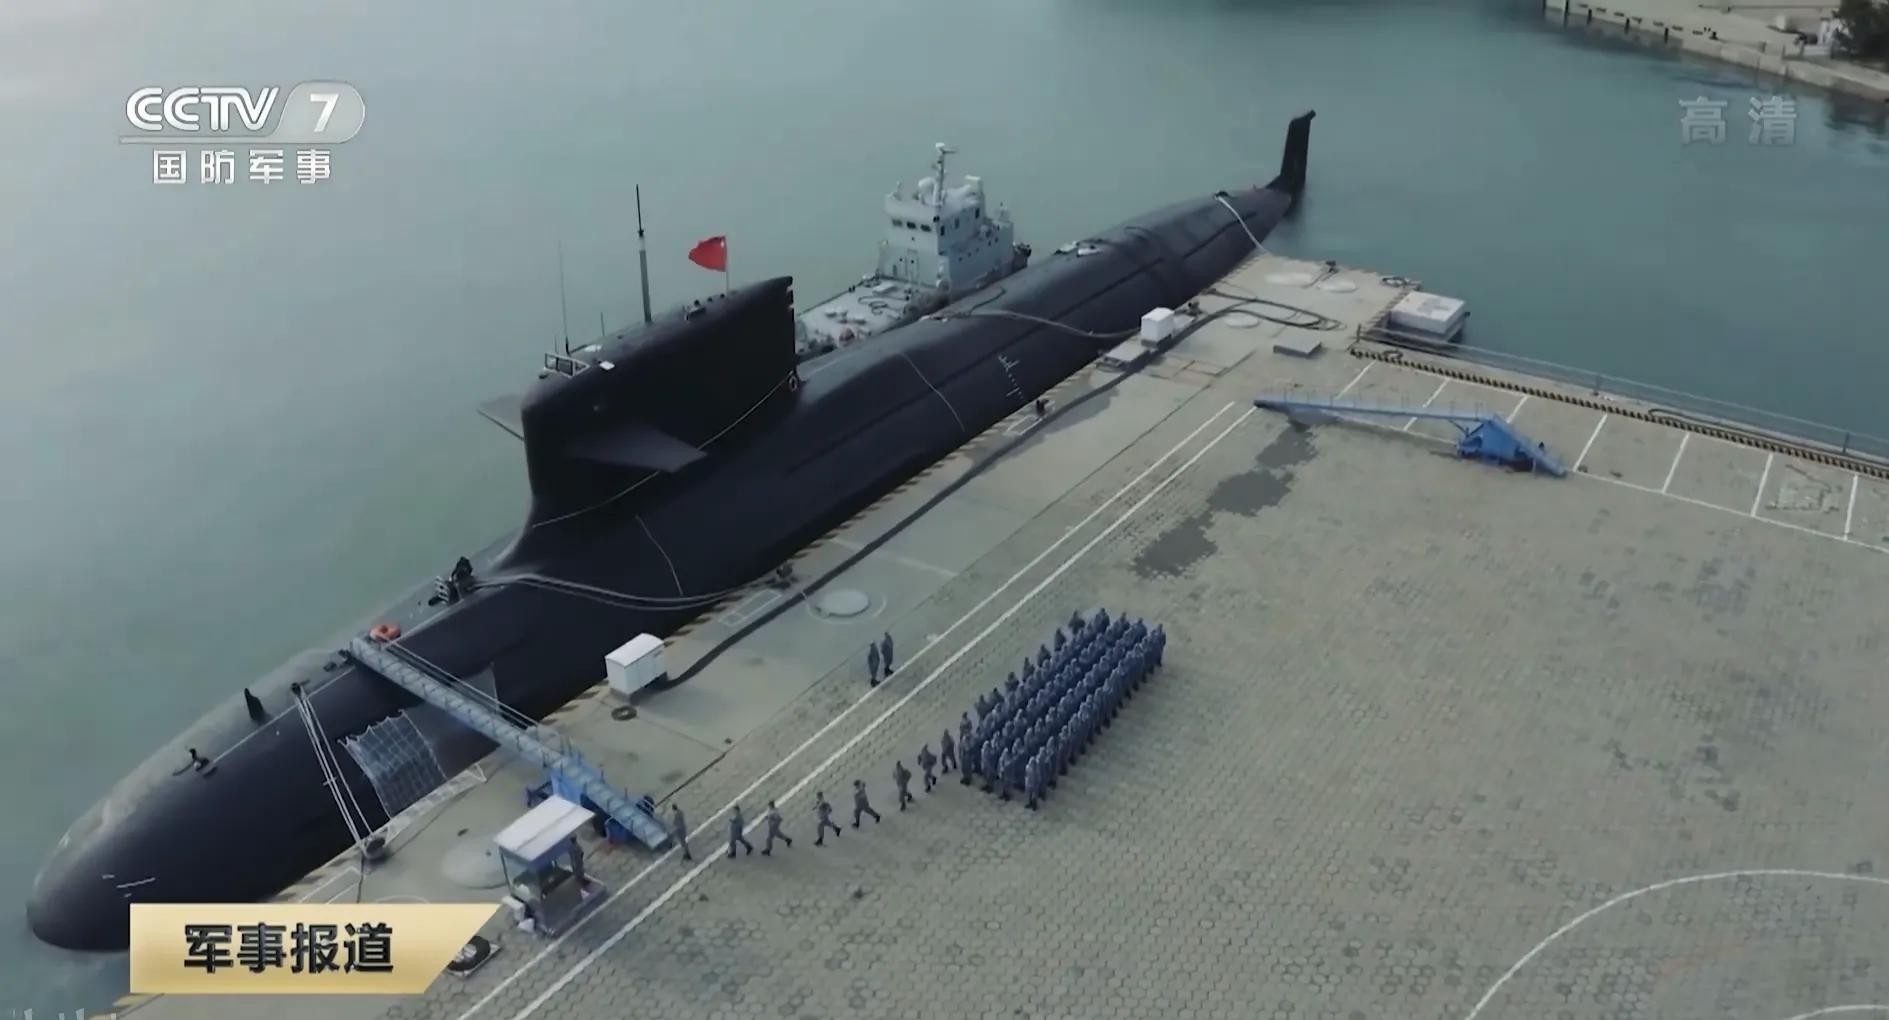 093核潜艇(093Ⅲ核潜艇漂亮“小龟背”，不像垂直导弹发射器，似更重要设备)